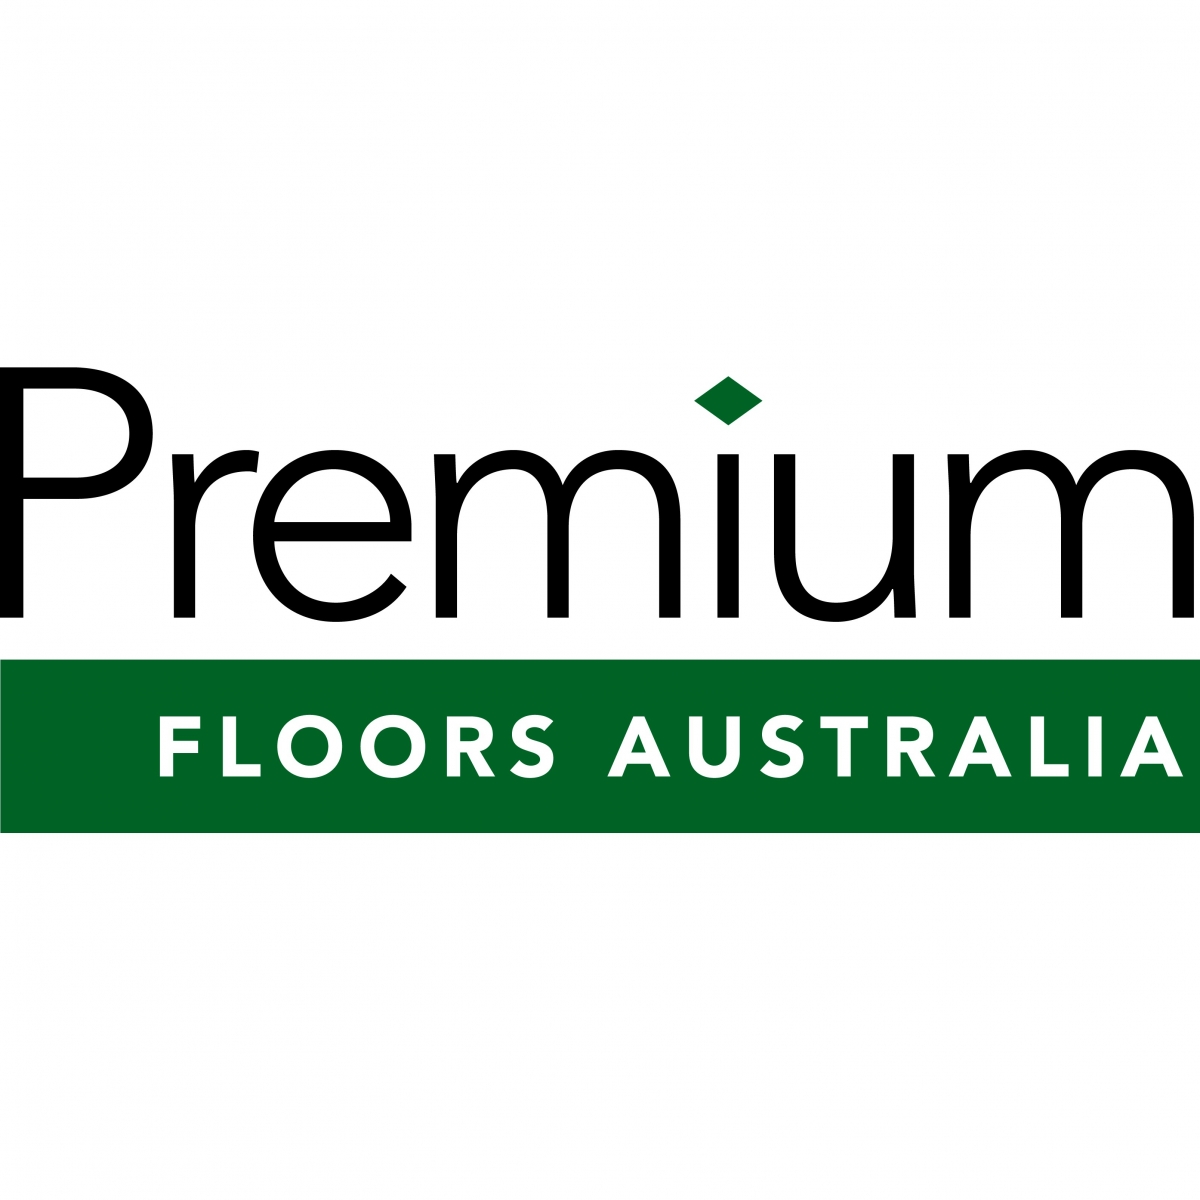 Premium Floors Australia Now Available